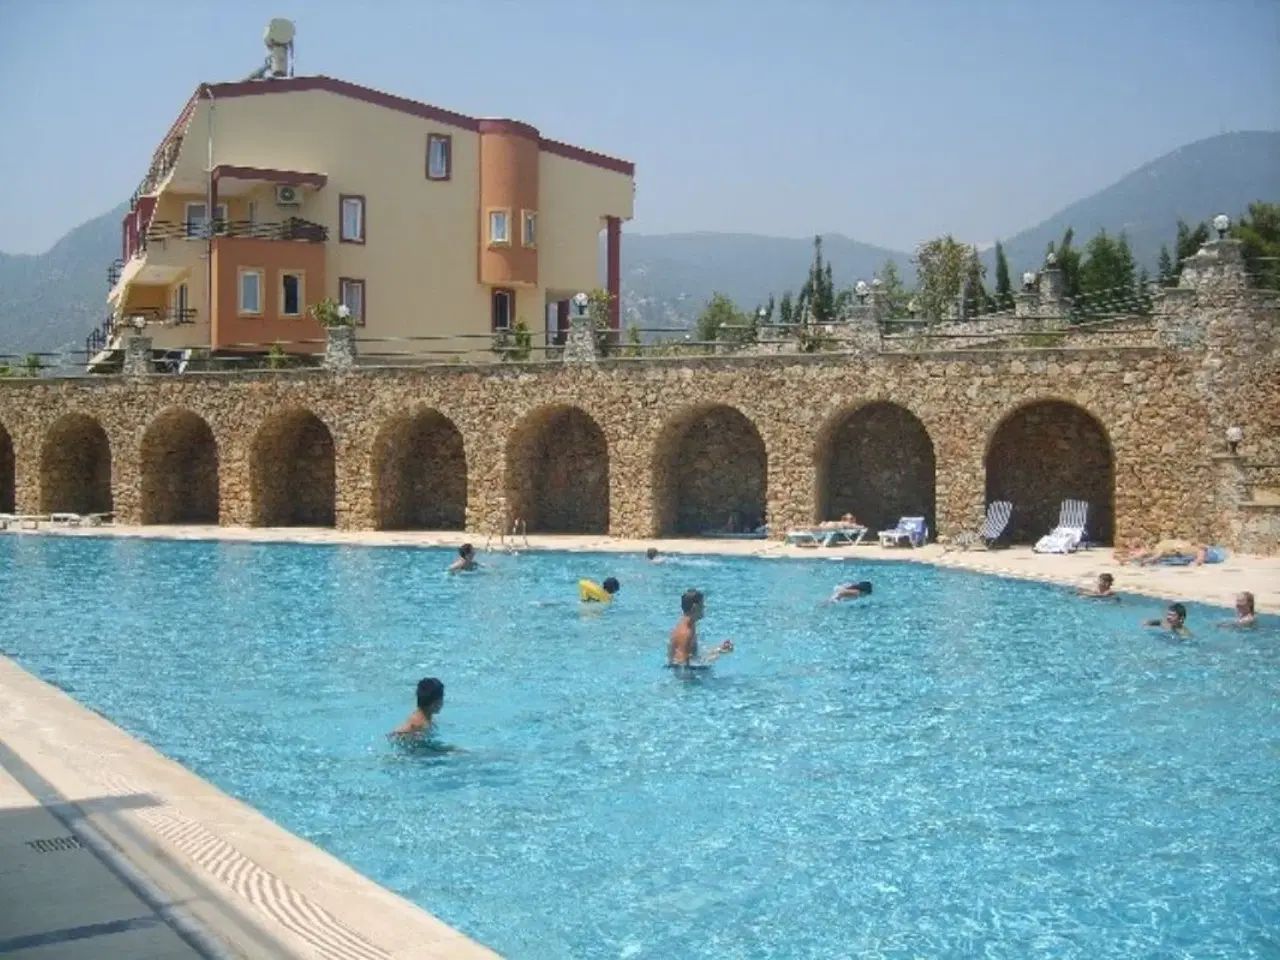 Billede 2 - Luksuslejlighed i Tyrkiet med havudsigt, 180 m2 i Alanya med 600 m2 fælles pool, 4 soveværelser, 2 b